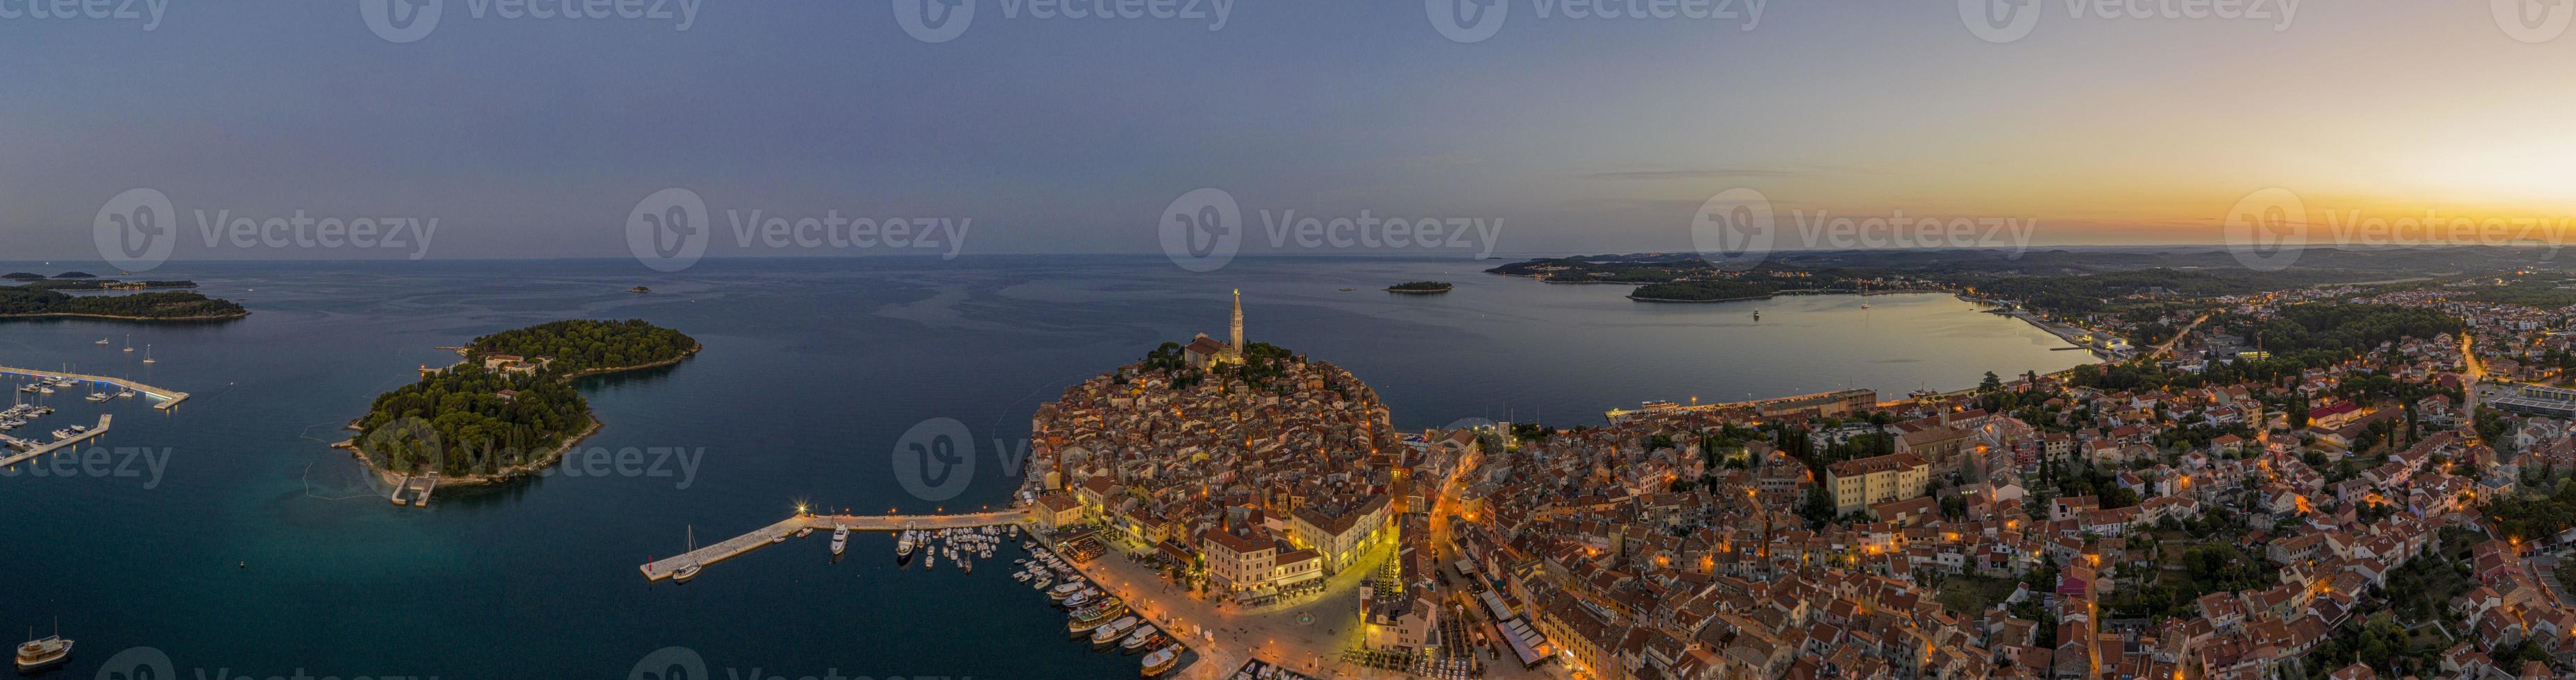 imagem aérea panorâmica da cidade histórica de rovinj, na croácia, durante o nascer do sol foto